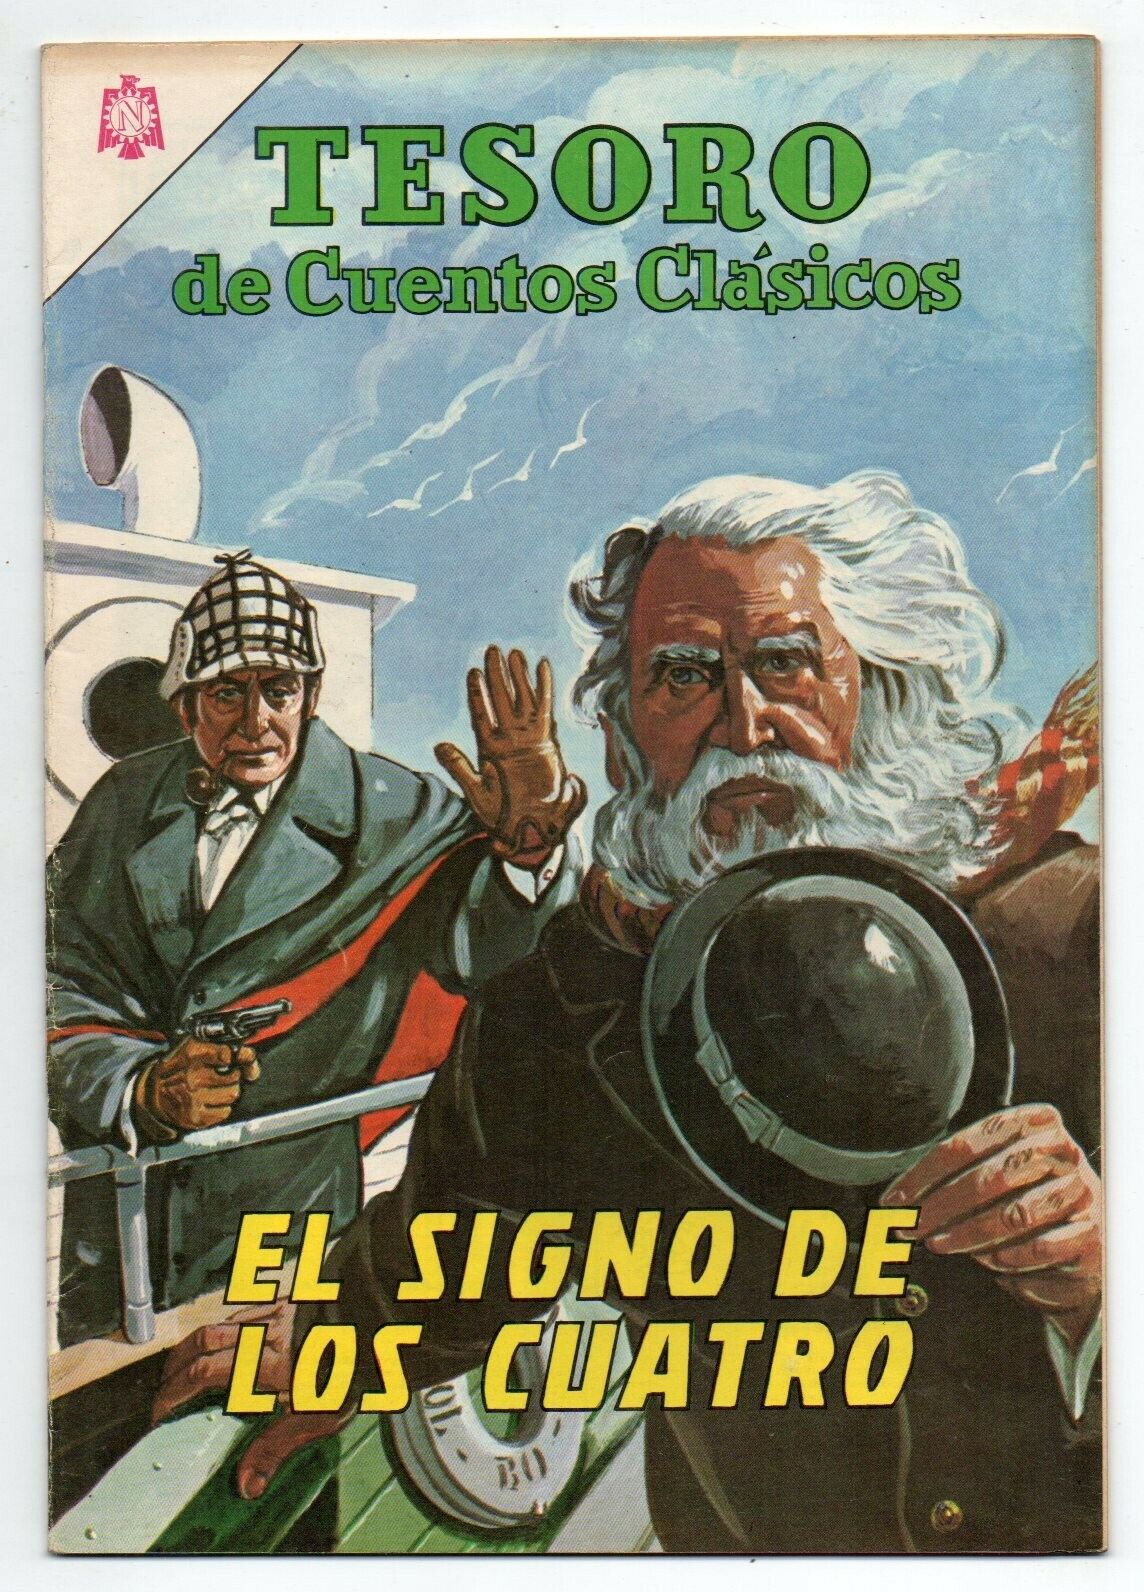 TESORO de Cuentos Clasicos #91 El Signo de los Cuatro, Novaro Comic 1965